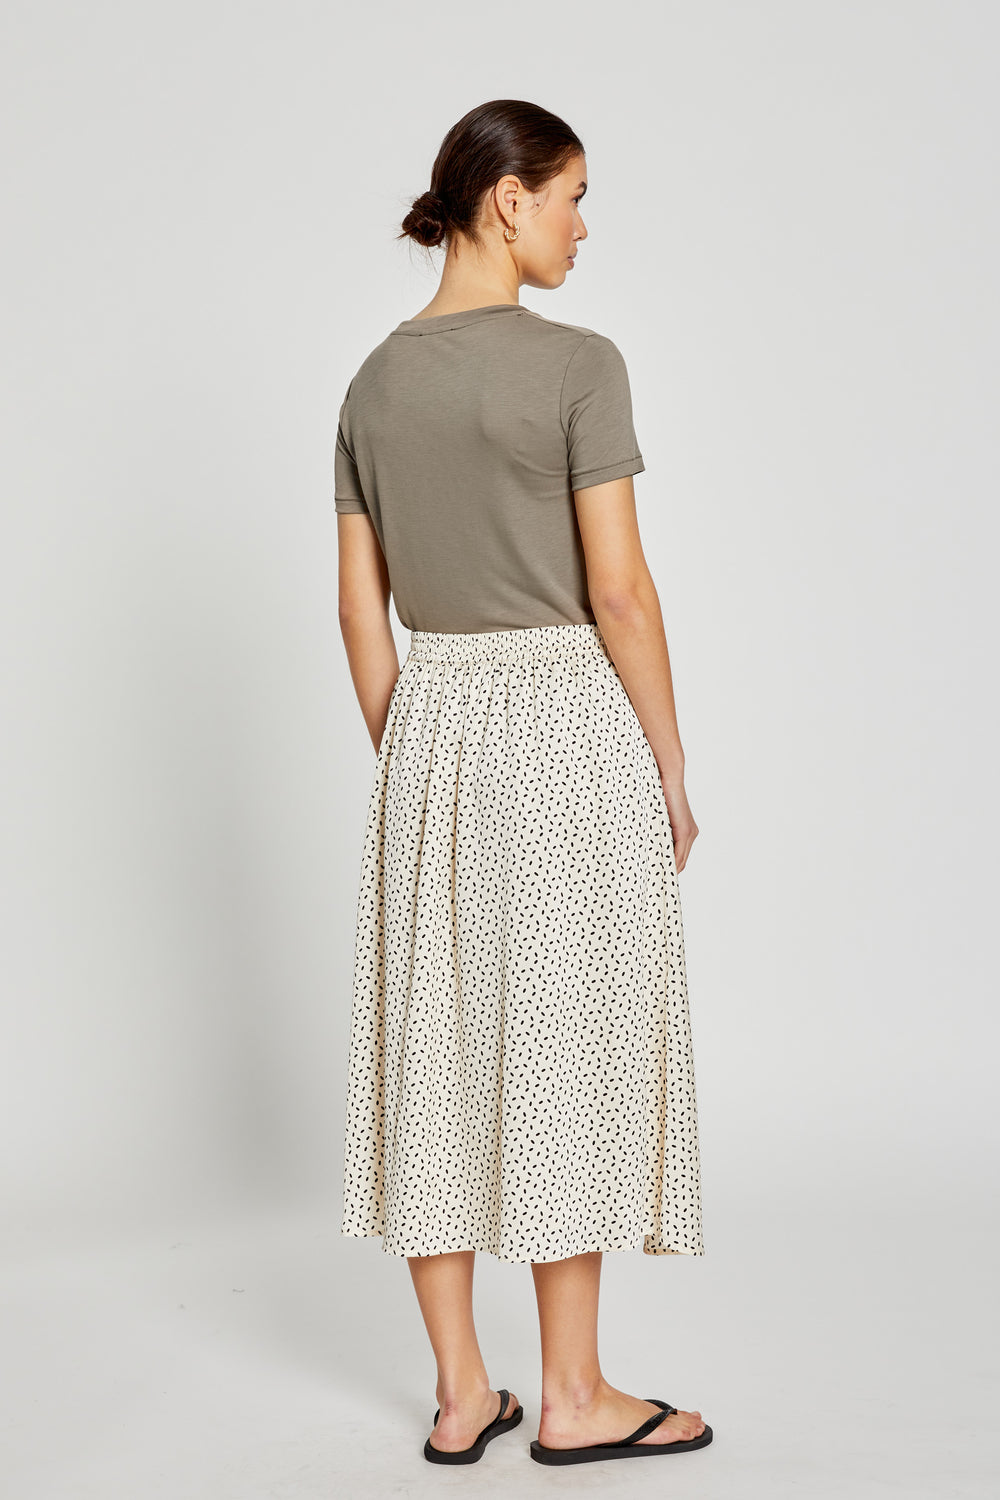 Bruuns Bazaar Women AcaciaBBAmattas skirt Skirt Cream/black dot print